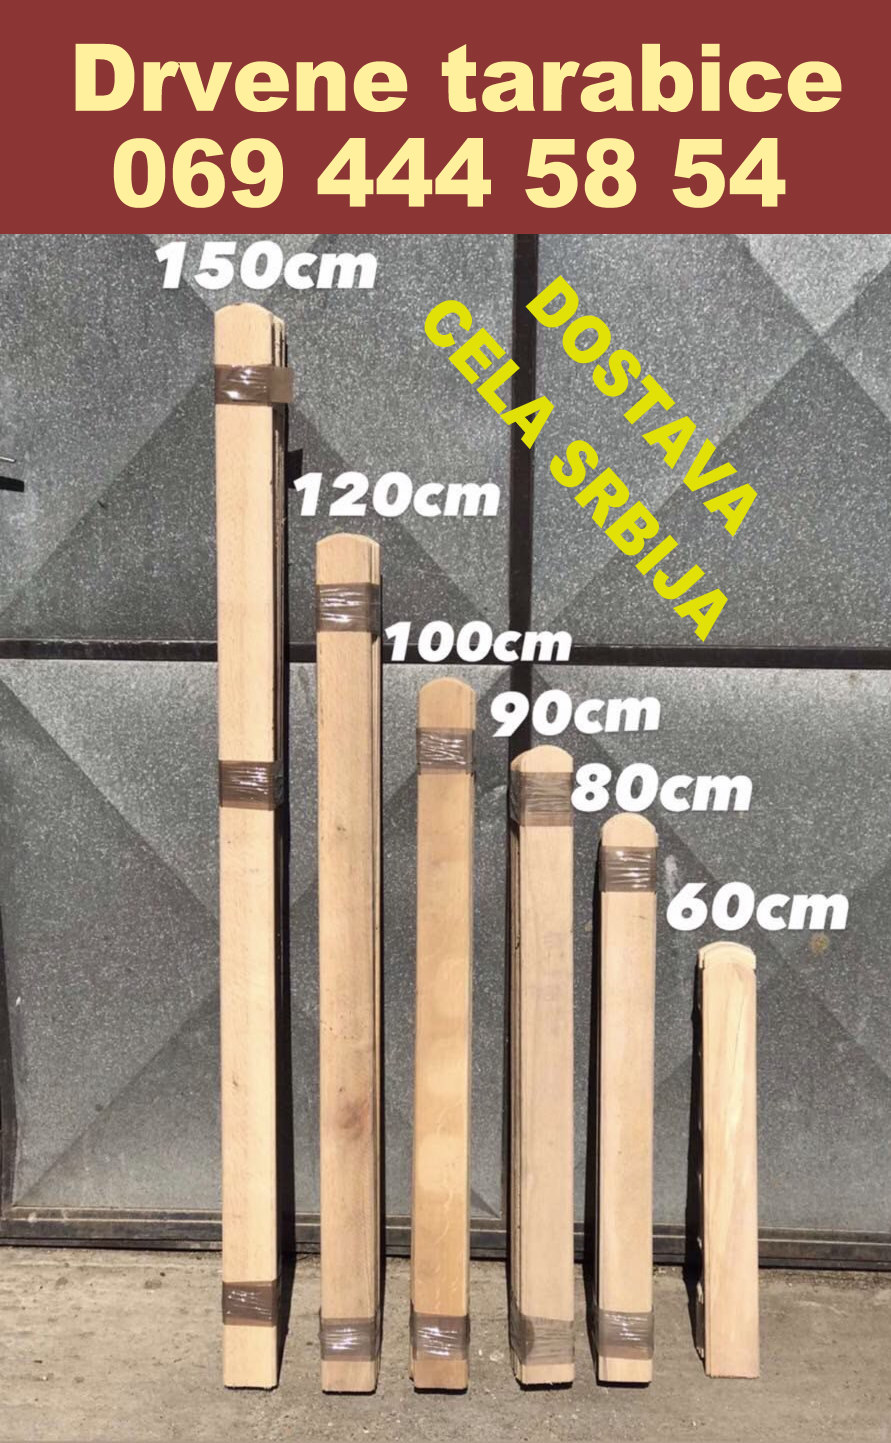 4 Drvene tarabice 50 cm do 180 cm najeftinije kvalitetne uz dostavu Srbija 069 444 5854